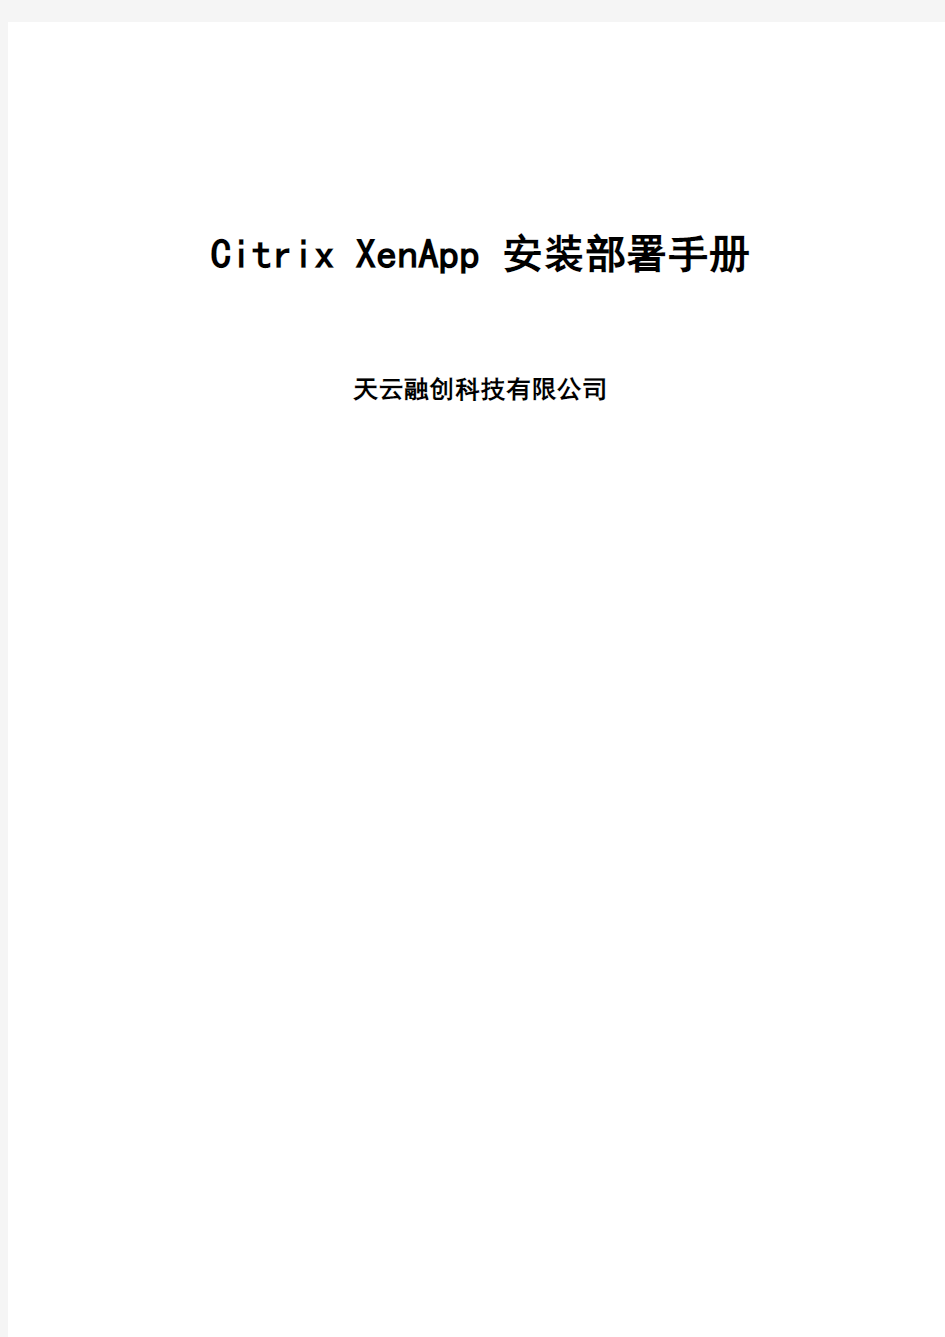 CitrixXenApp安装部署手册经验分享